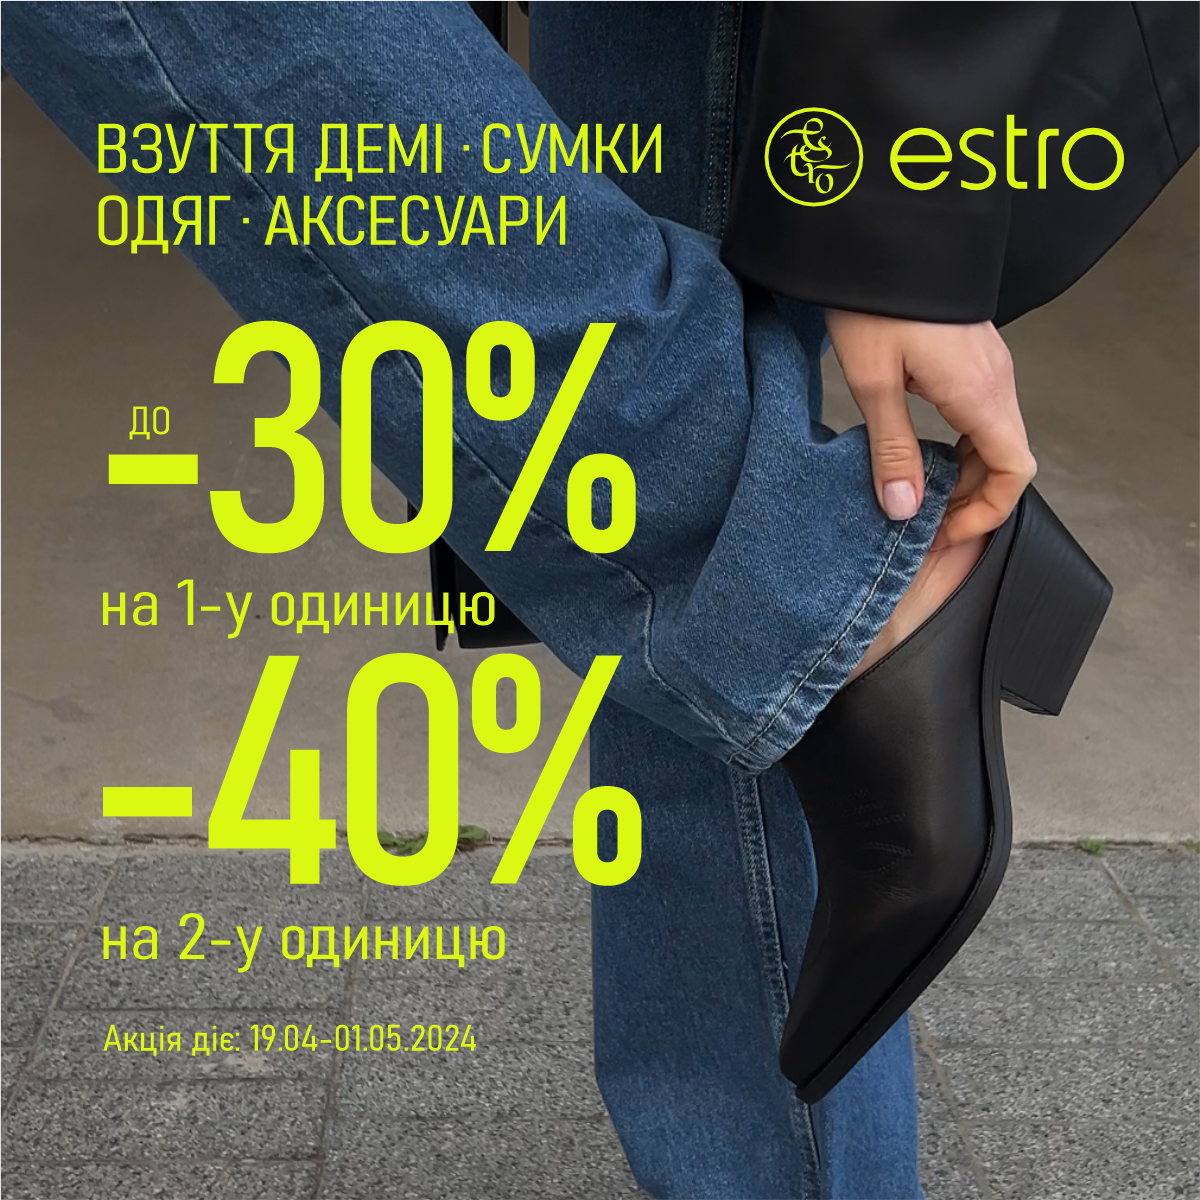 Знижки до -40% у Estro